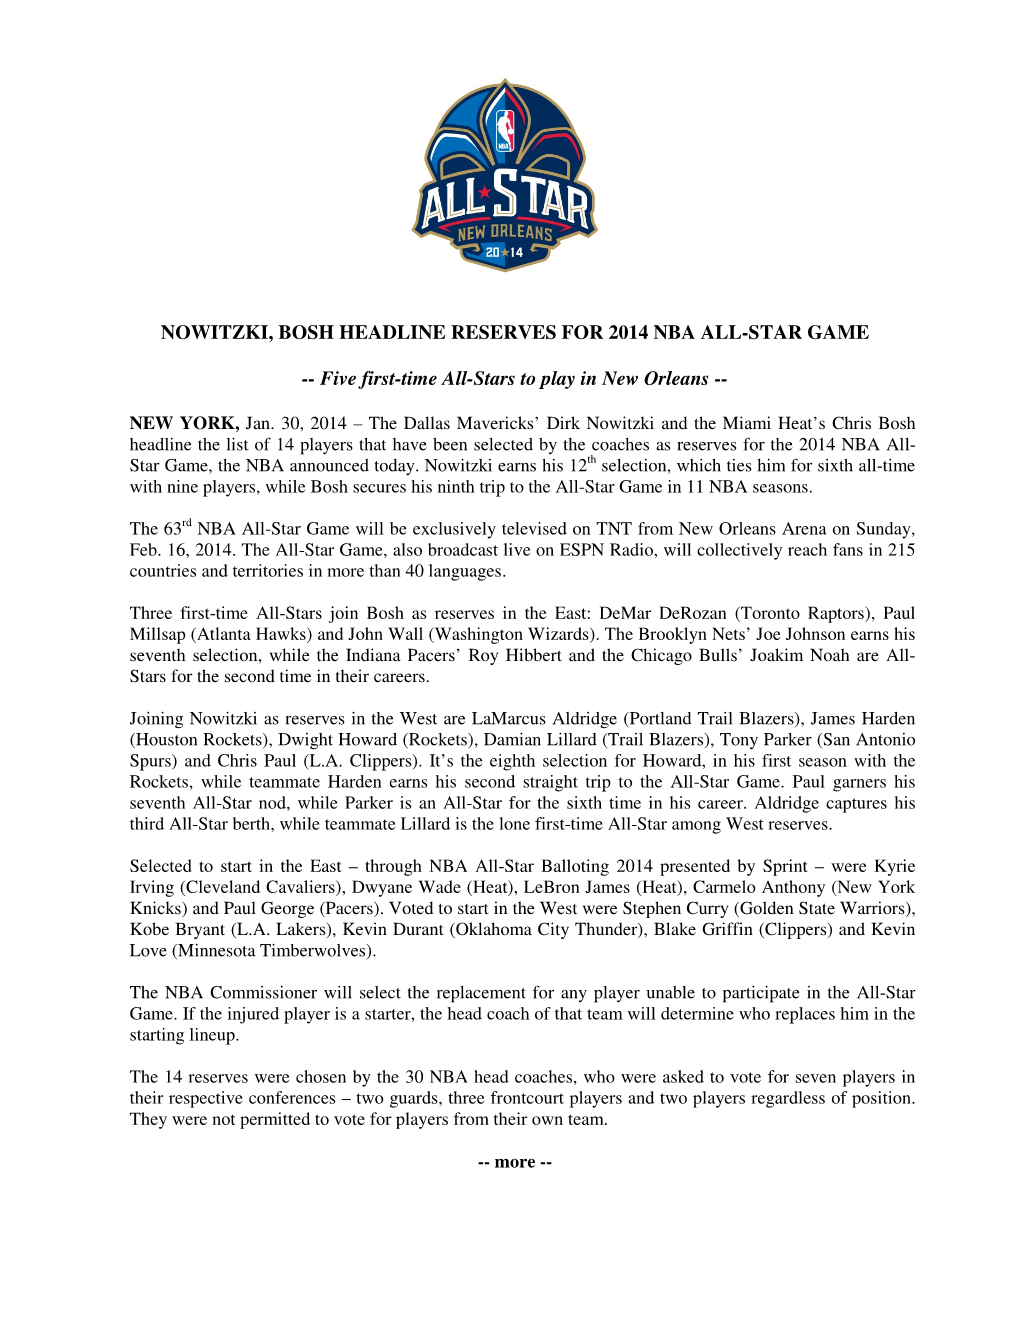 Nowitzki, Bosh Headline Reserves for 2014 Nba All-Star Game